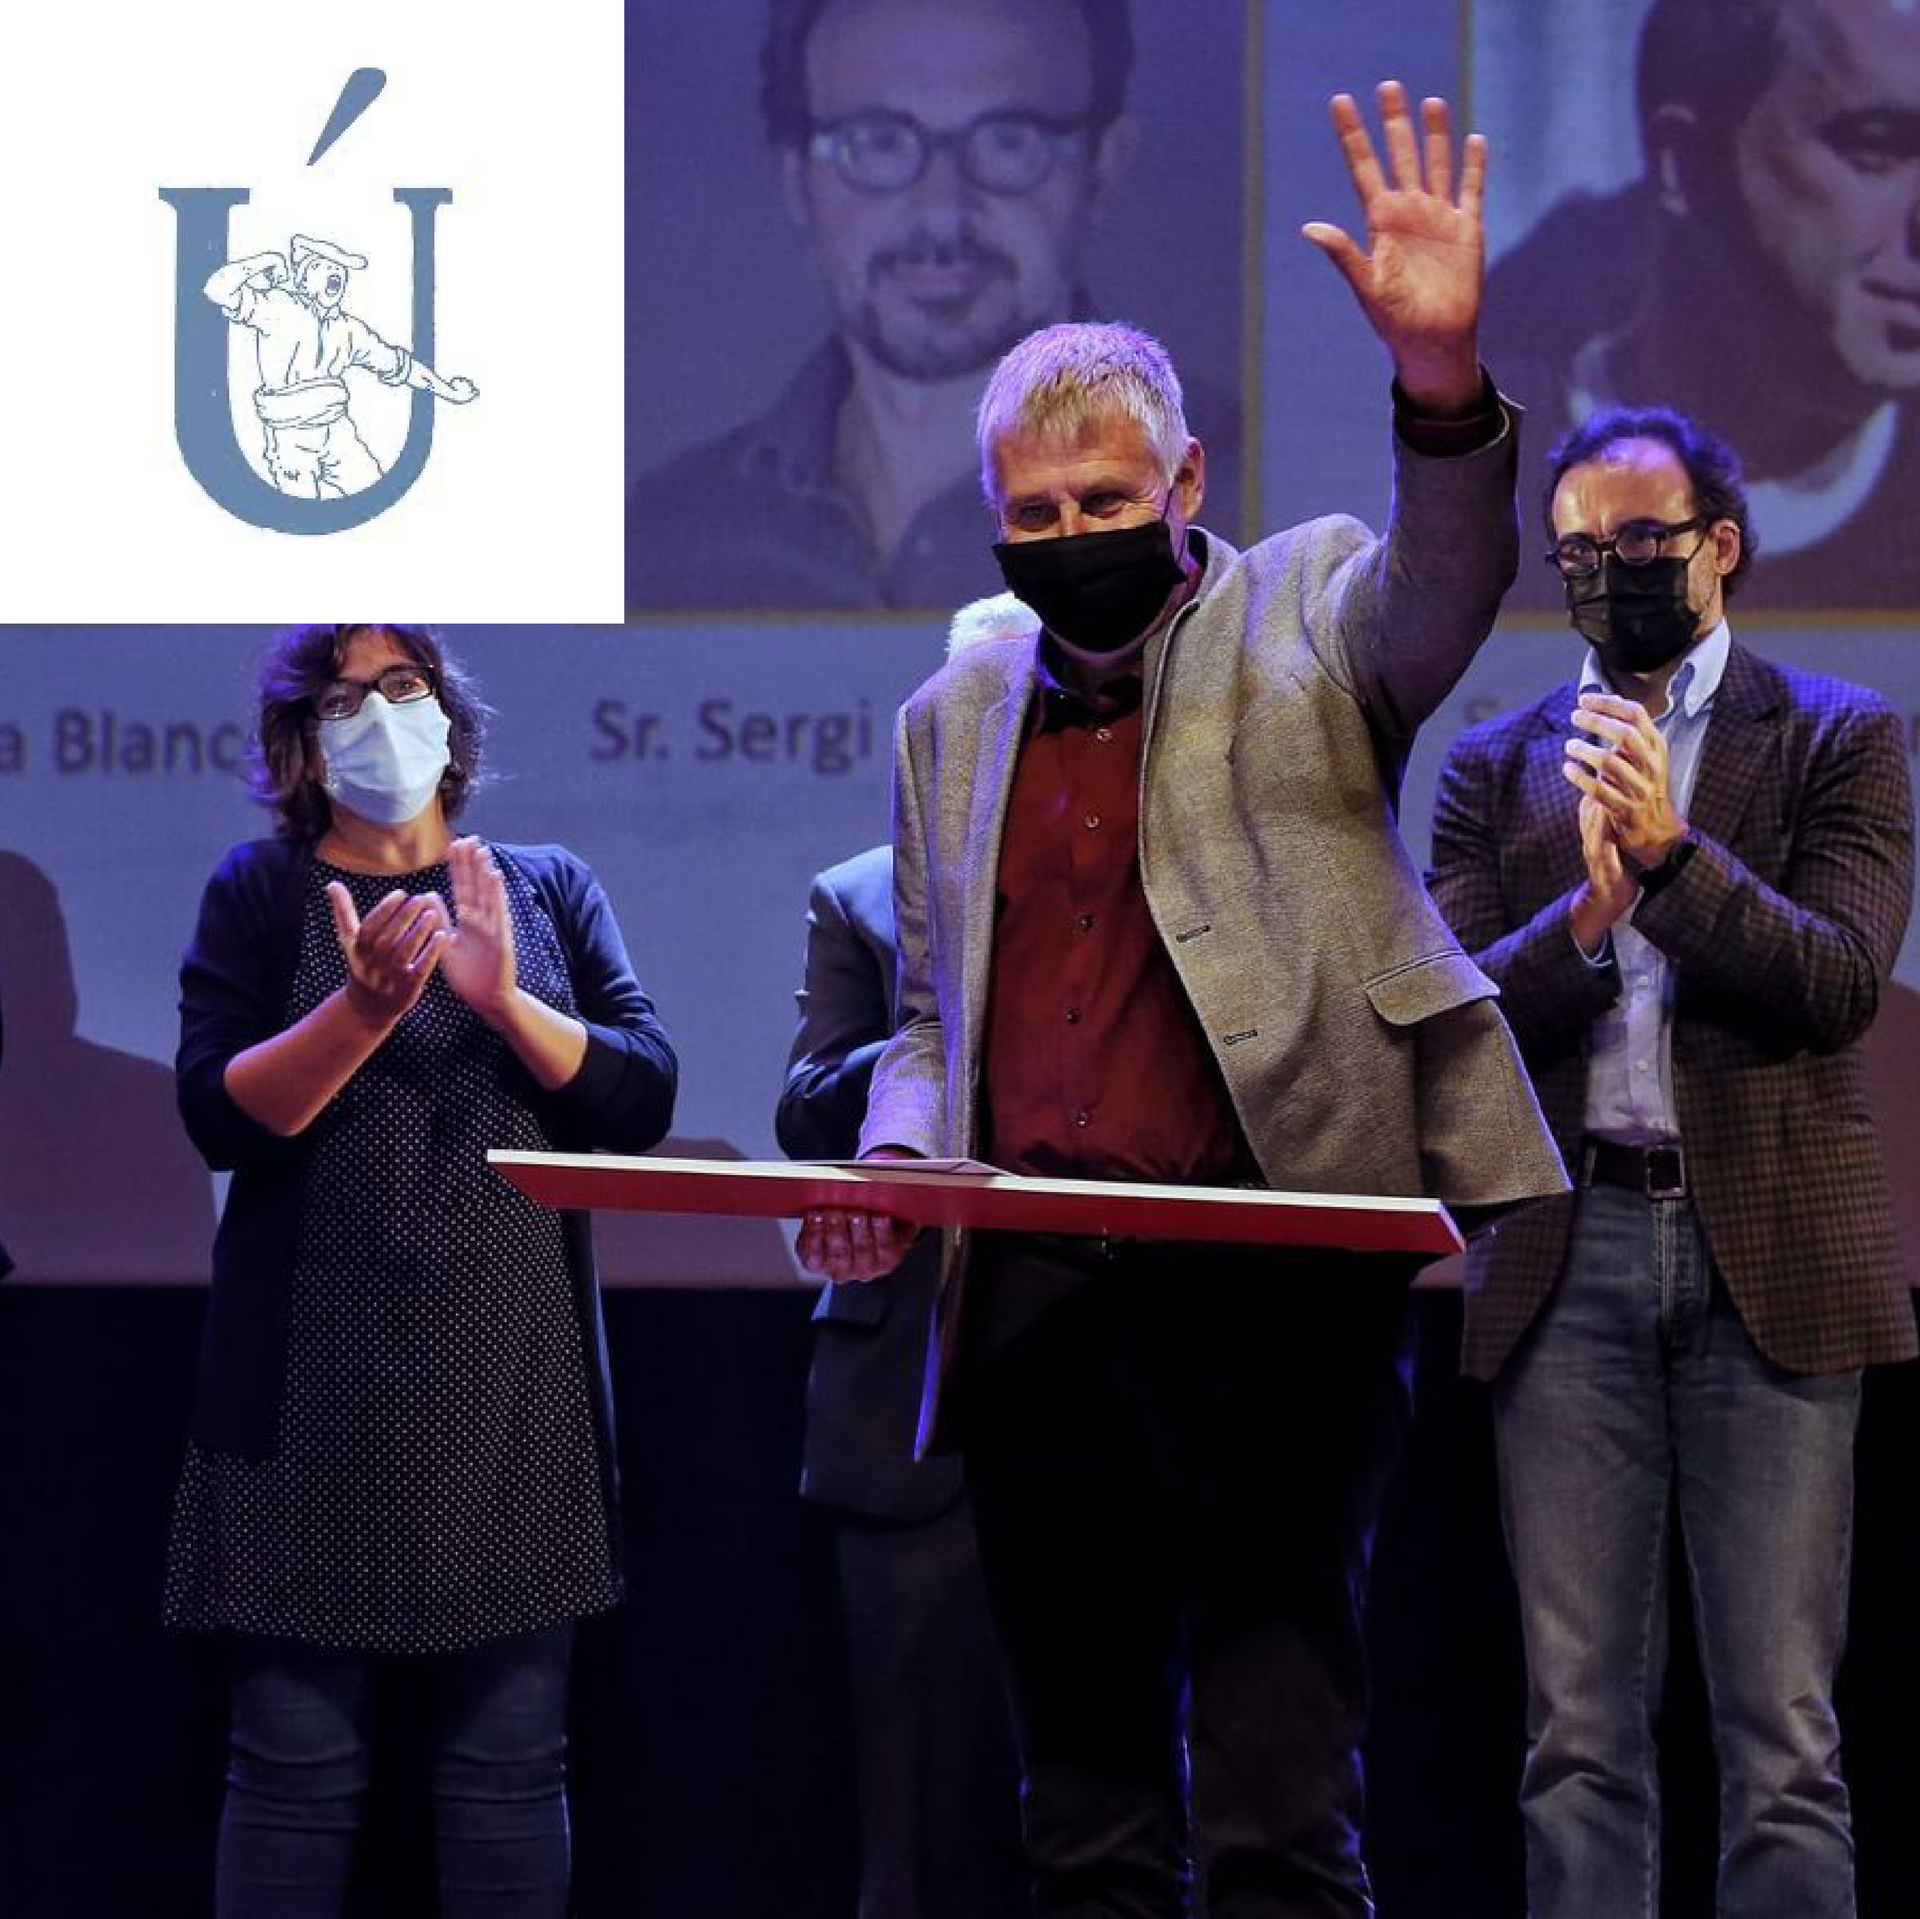 El Festival Itinera guanya el premi Impulsa Cultura 2021